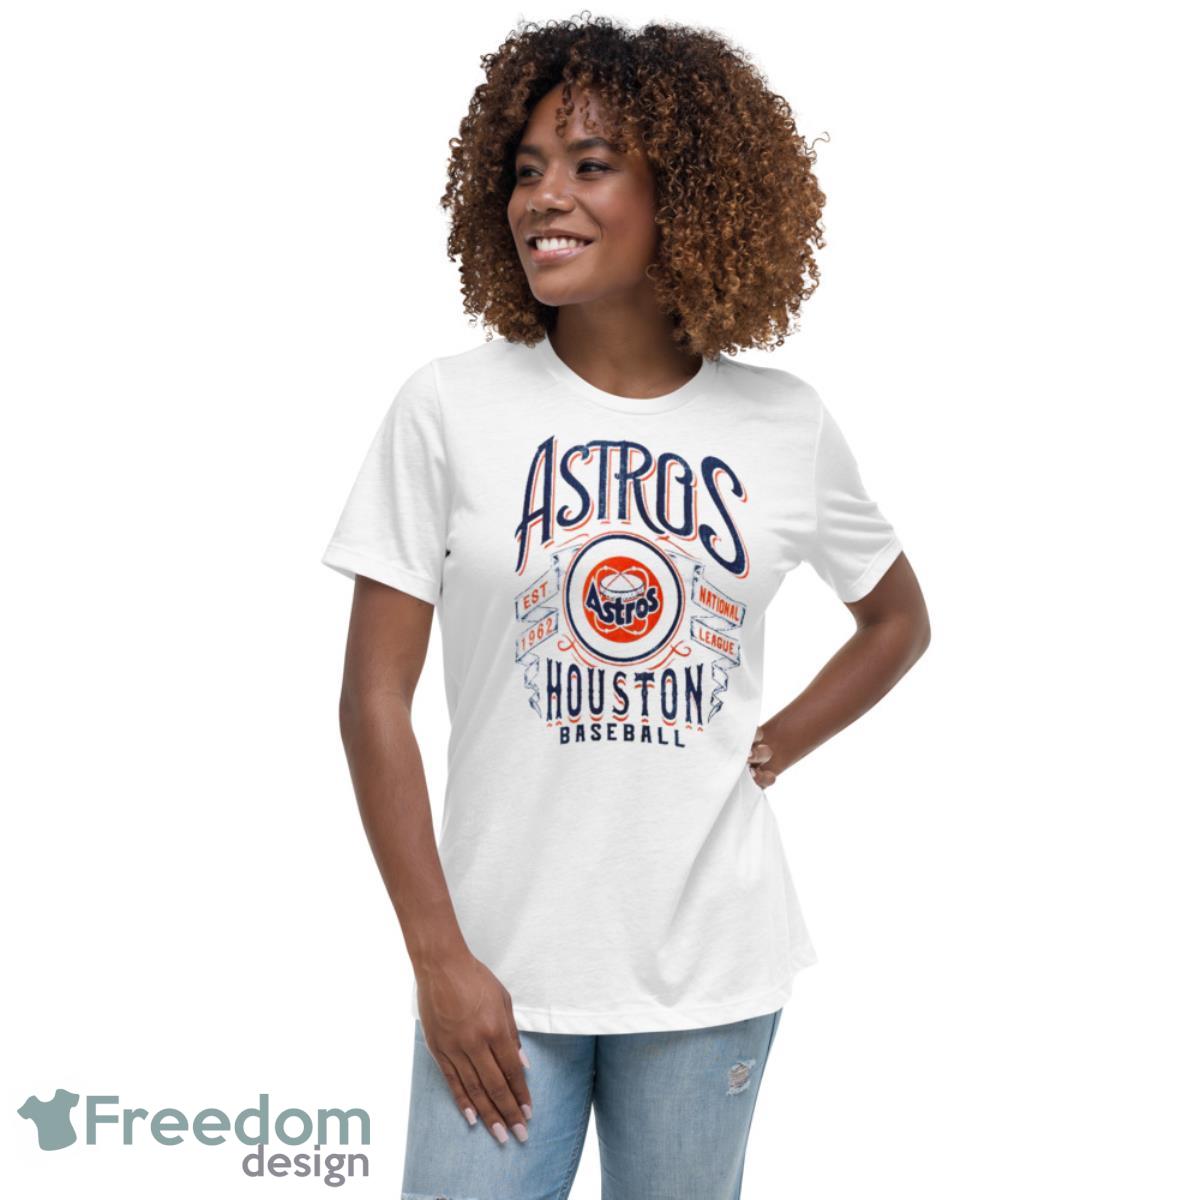 Houston Astros 1962 T-Shirt Baseball